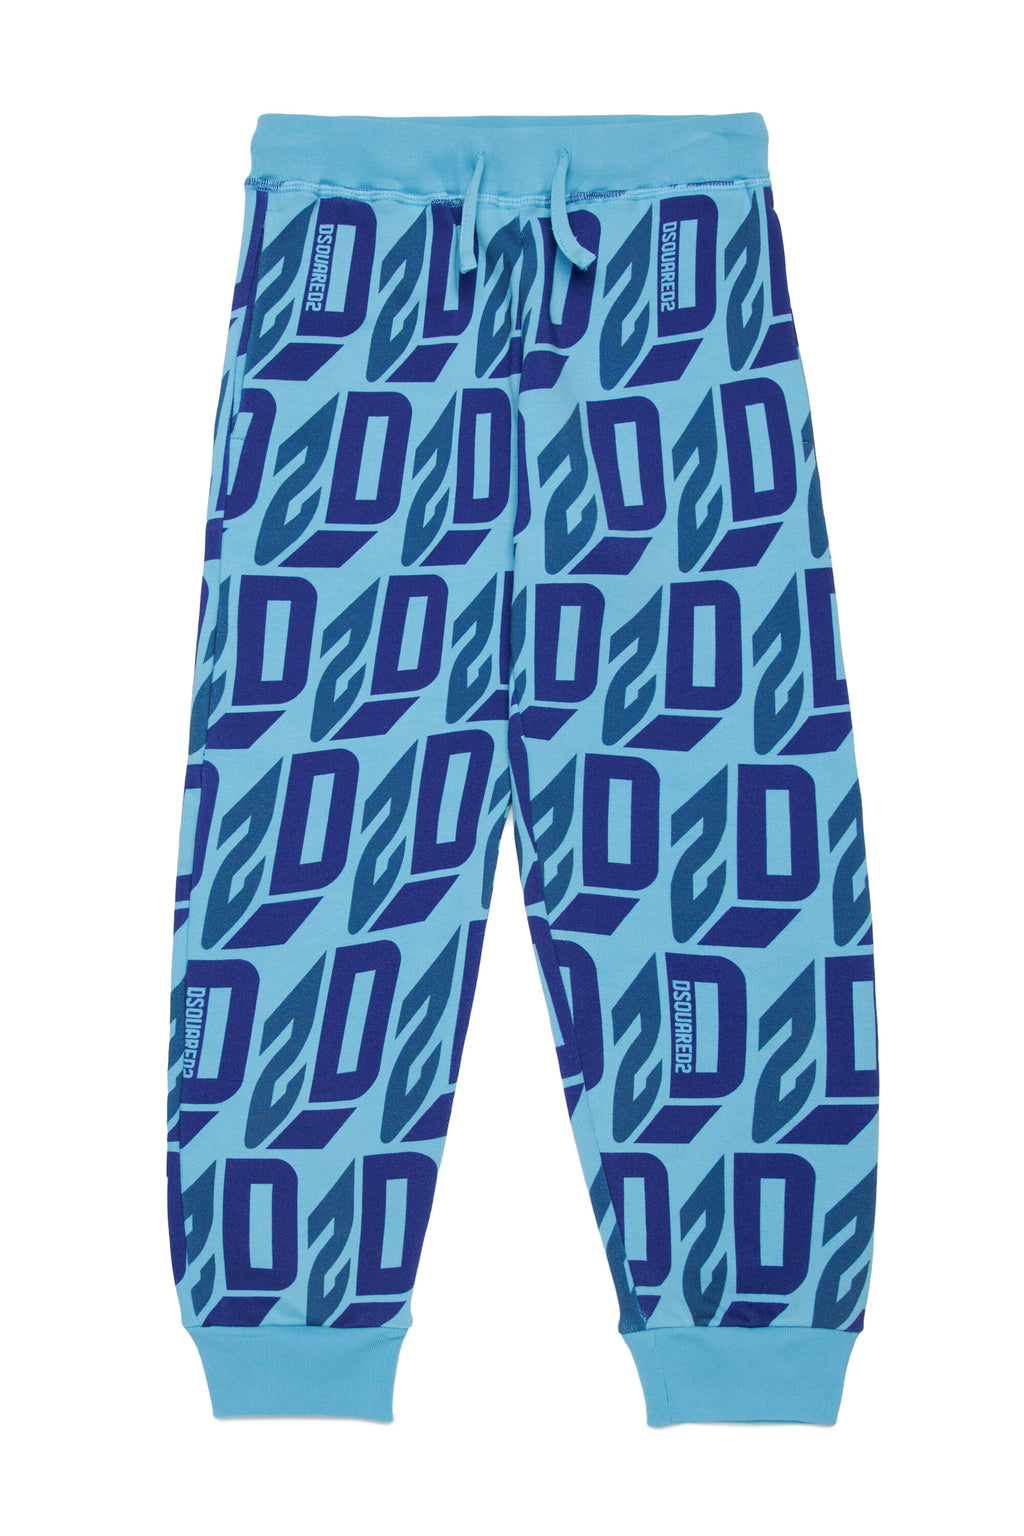 Pantalones deportivos D2 con logotipo efecto 3D